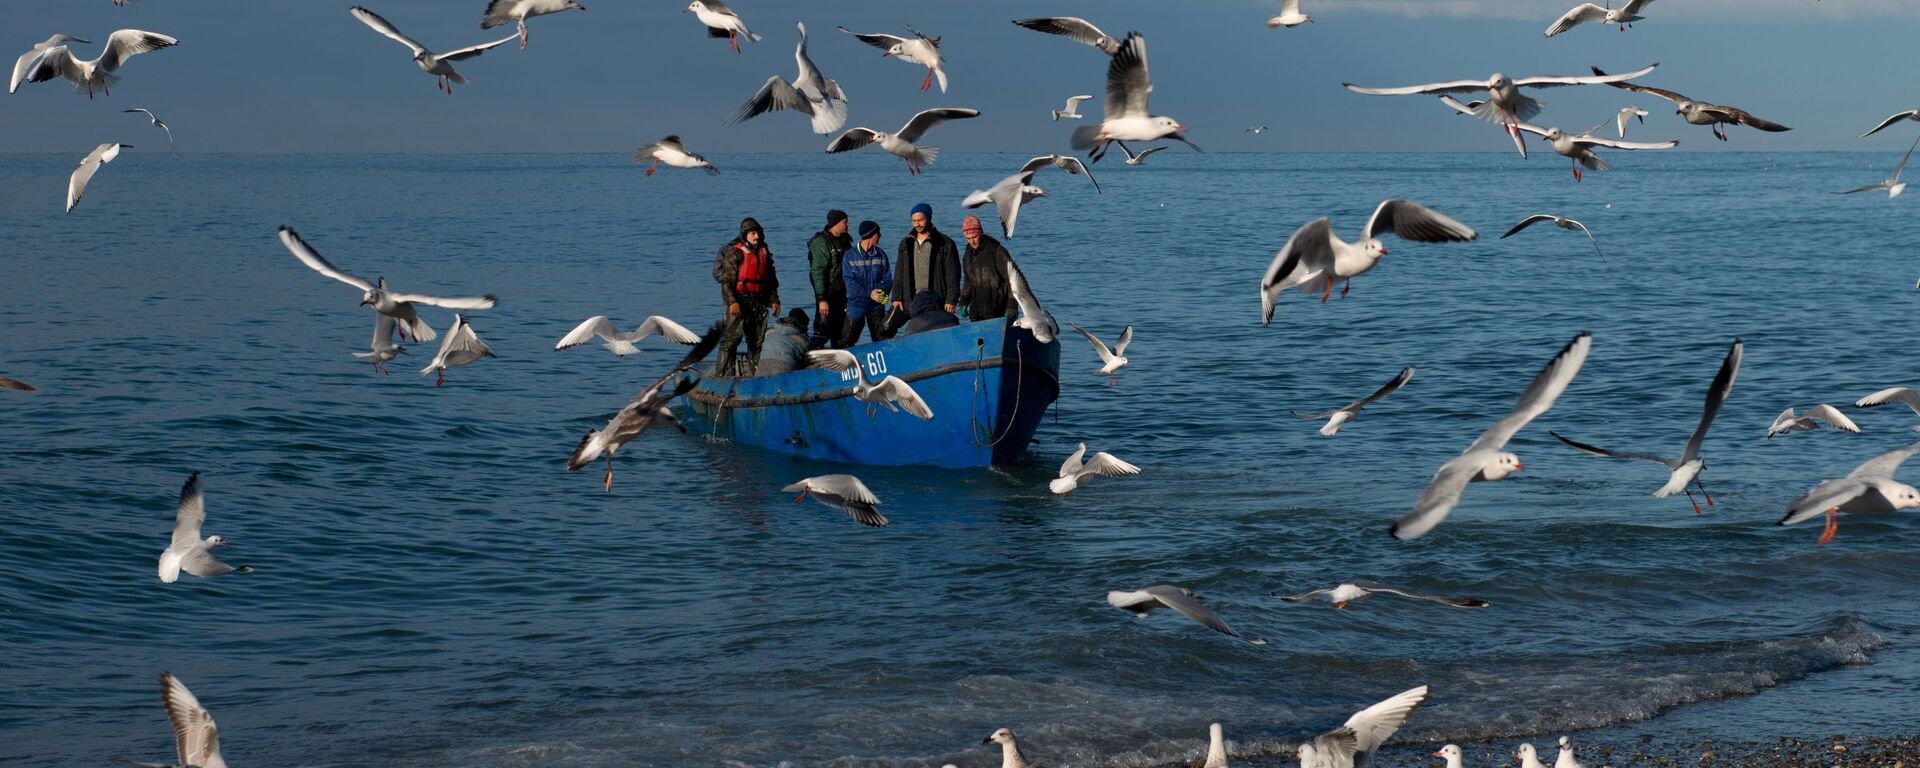 Рыбаки возвращаются после ловли рыбы в Черном море, Сочи - Sputnik Узбекистан, 1920, 25.09.2021